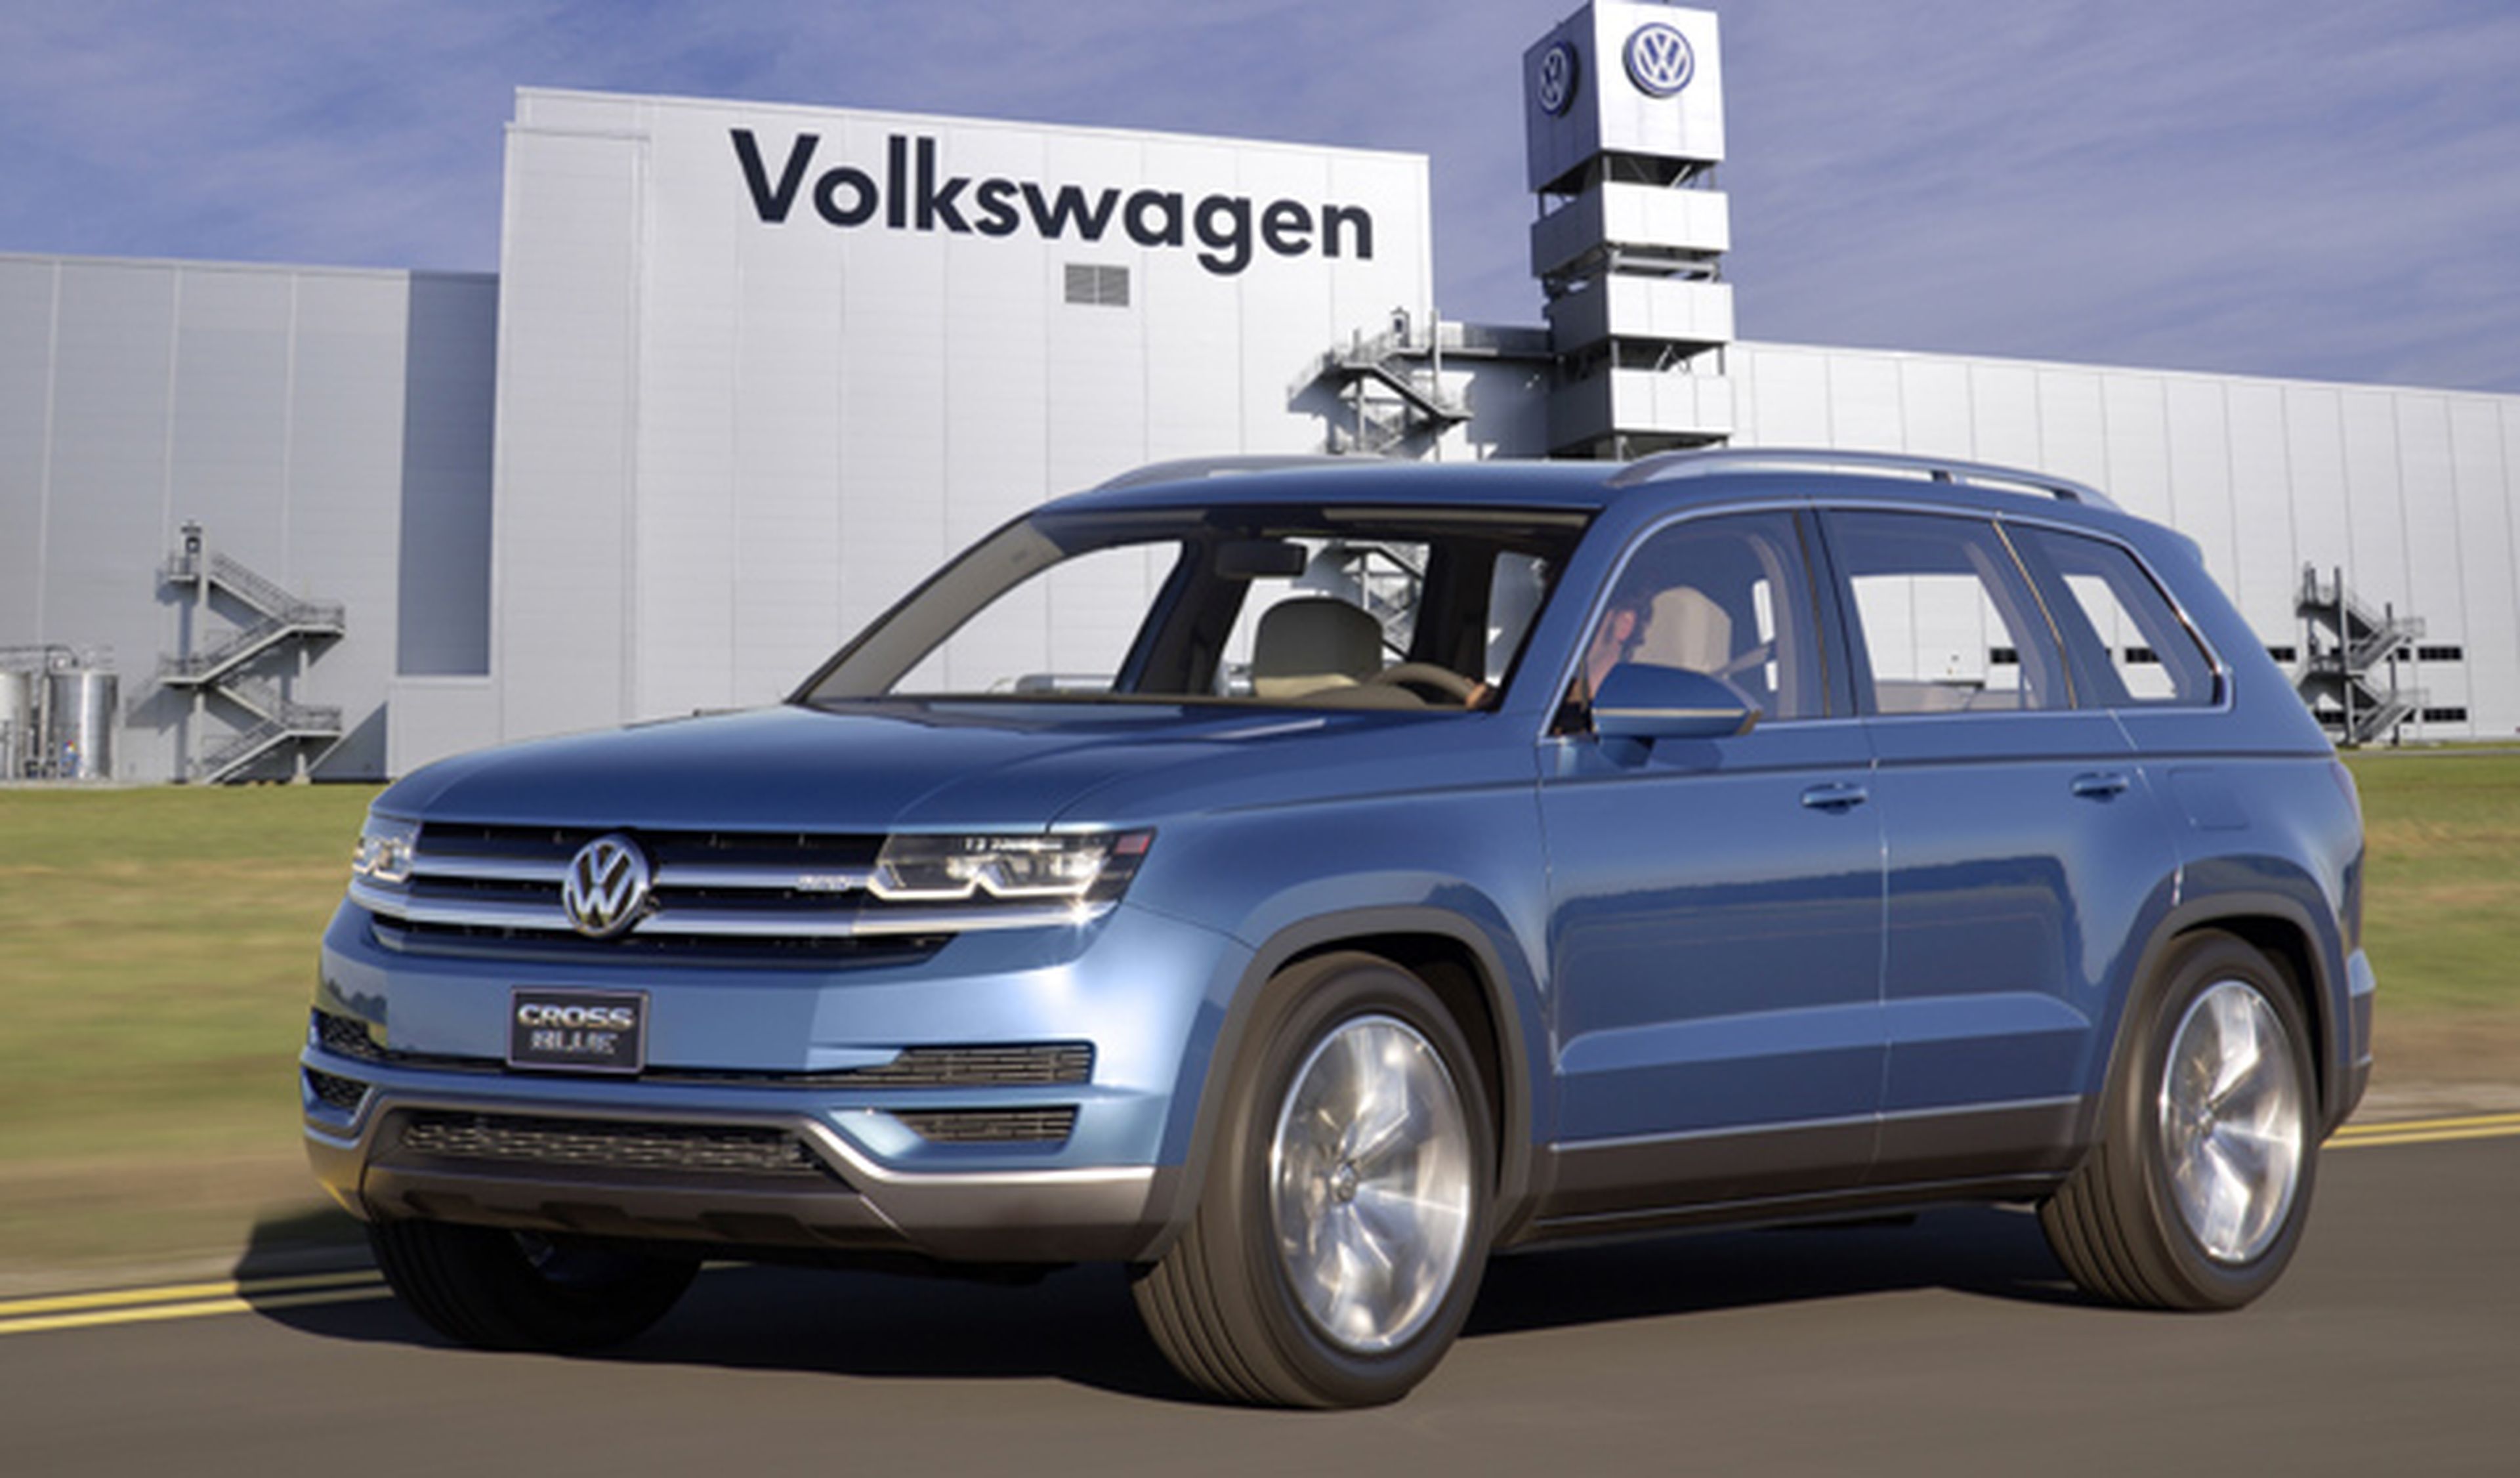 Volkswagen sufre una caída de ventas tras el escándalo